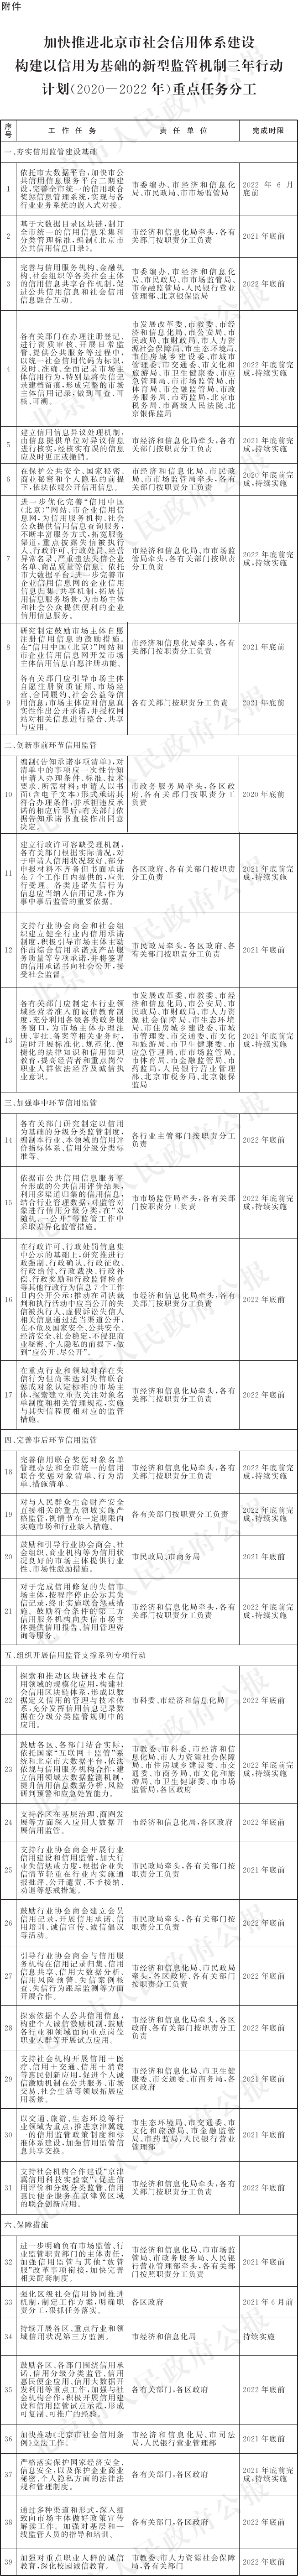 6-附件：加快推进北京市社会信用体系建设构建以信用为基础的新型监管机制三年行动计划(2020-2022年)重点任务分工.png